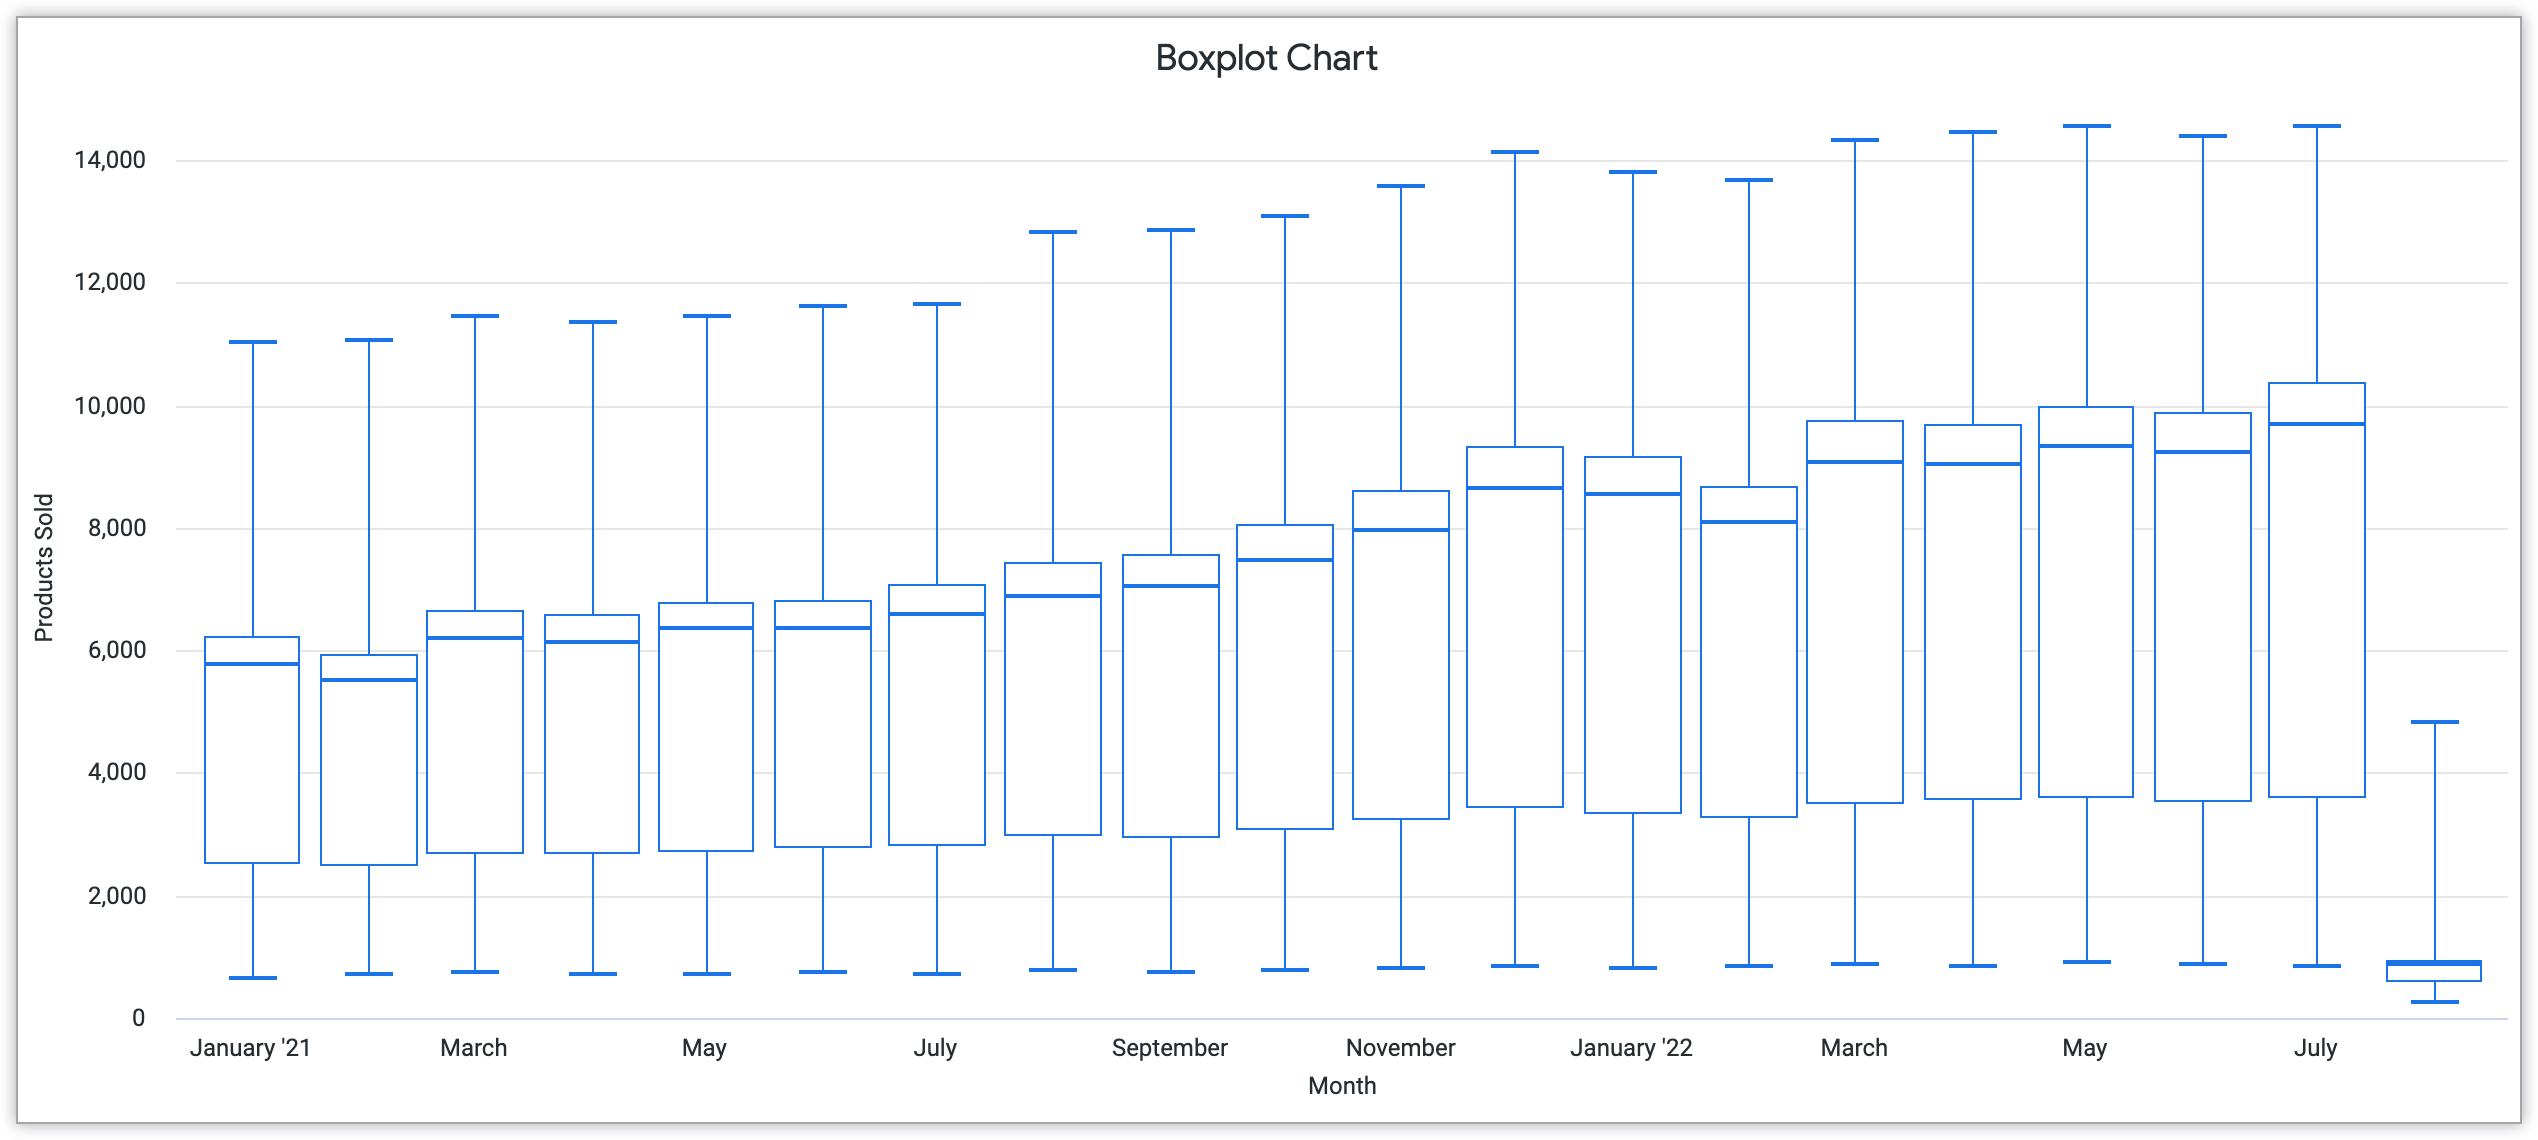 Grafico box plot che mostra il mese sull'asse x e i prodotti venduti sull'asse y.